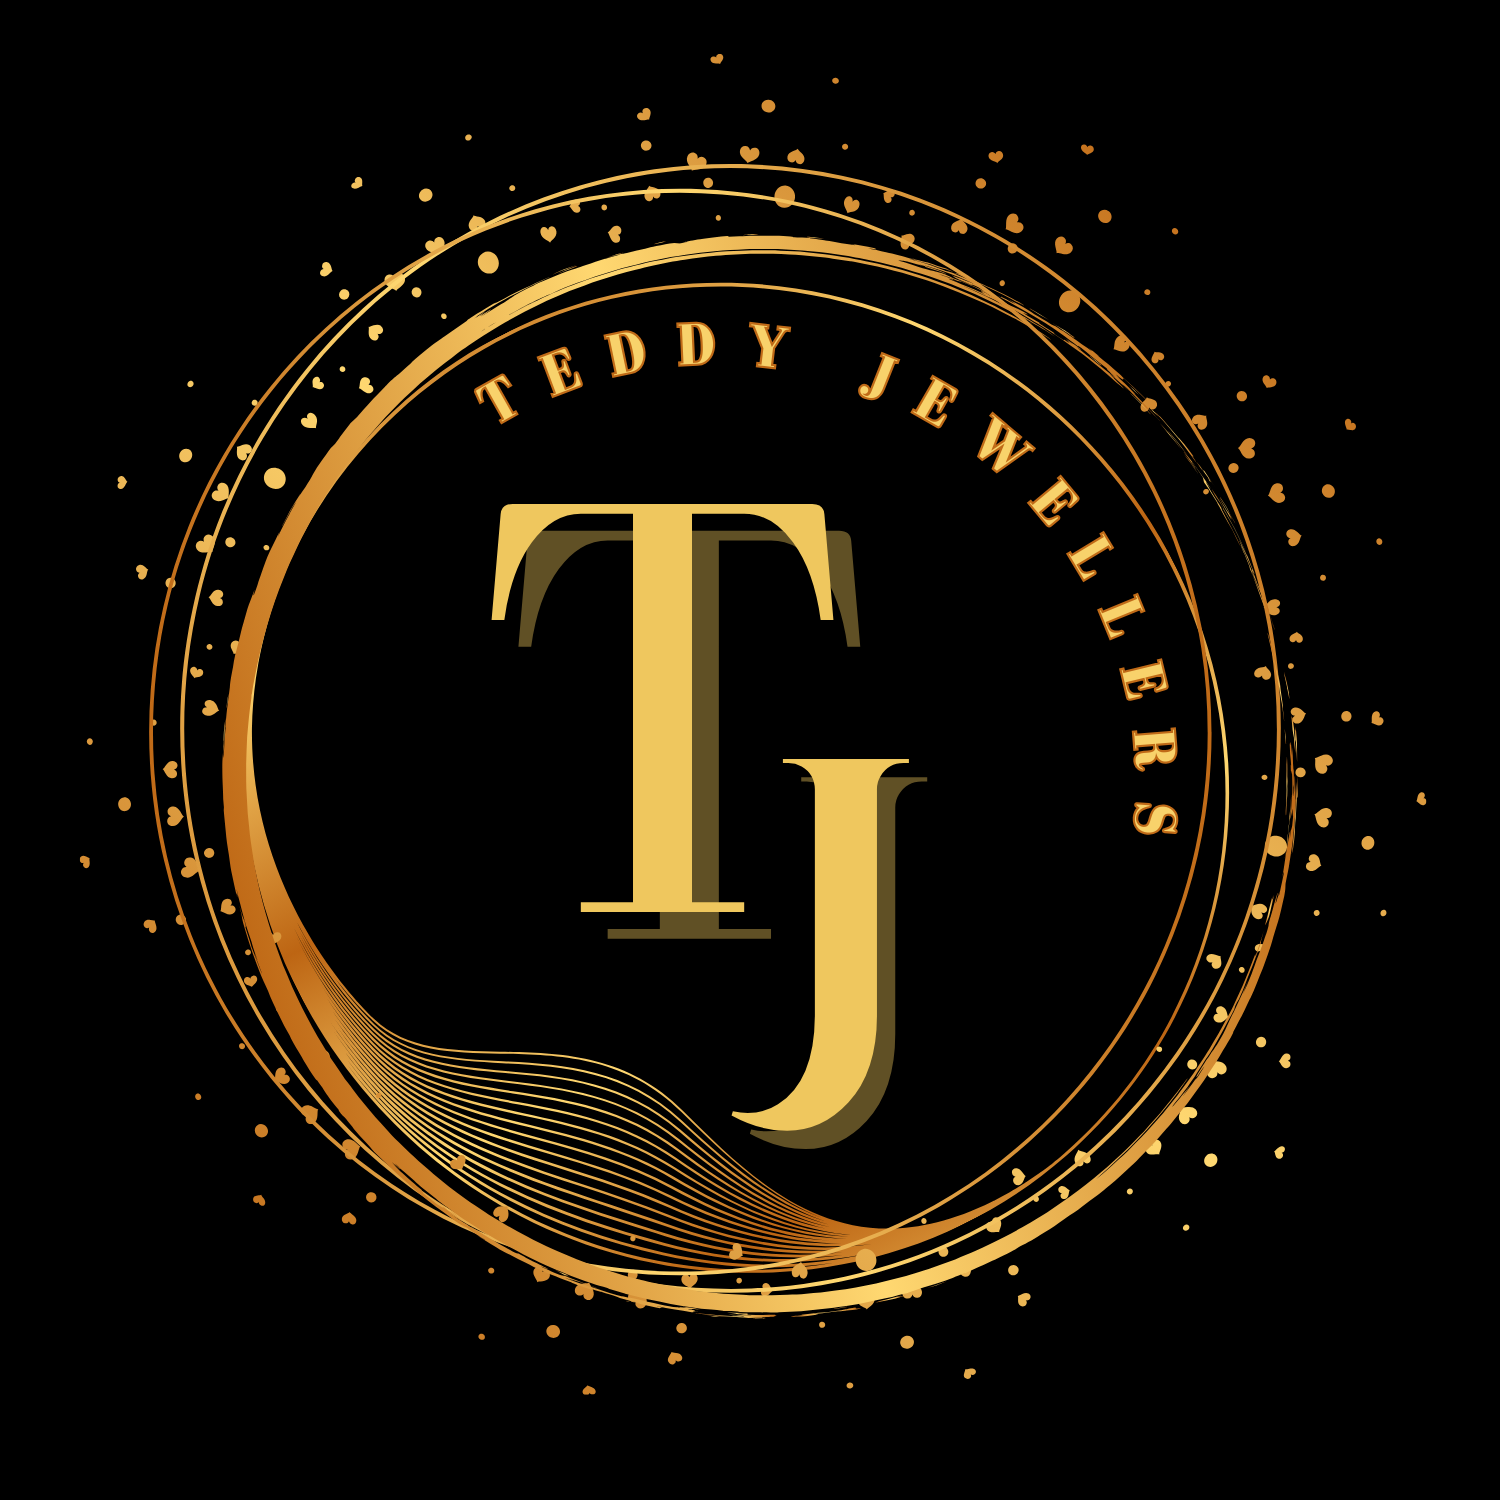 Teddy_jewellers_logo_big_size